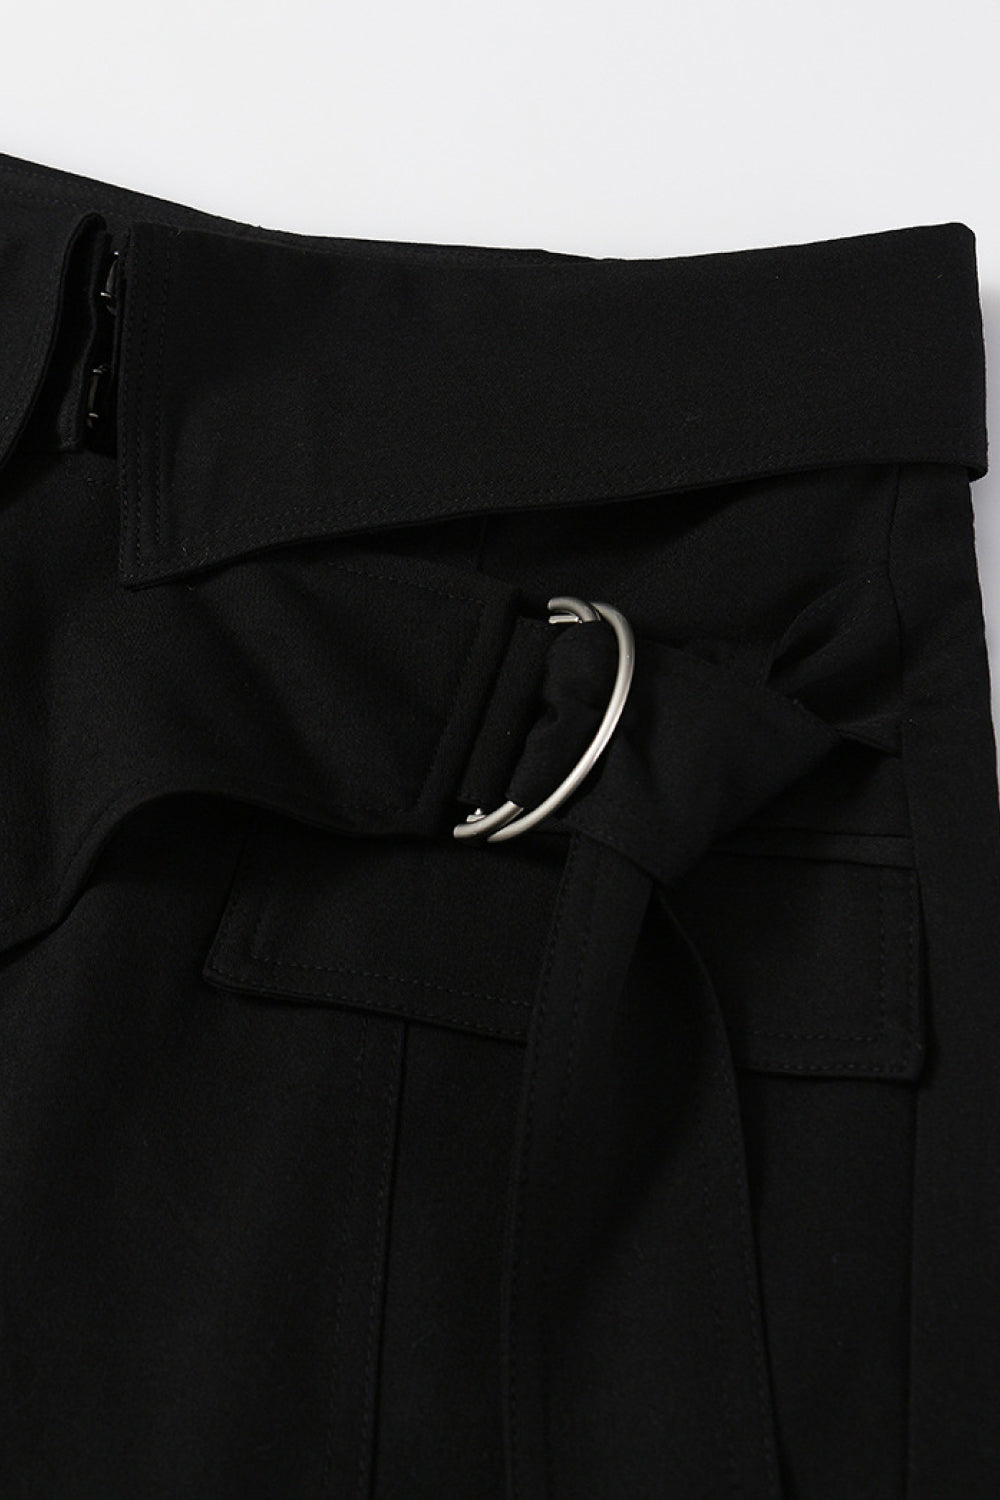 Asymmetrical Double-Ring Belt Lined Skirt